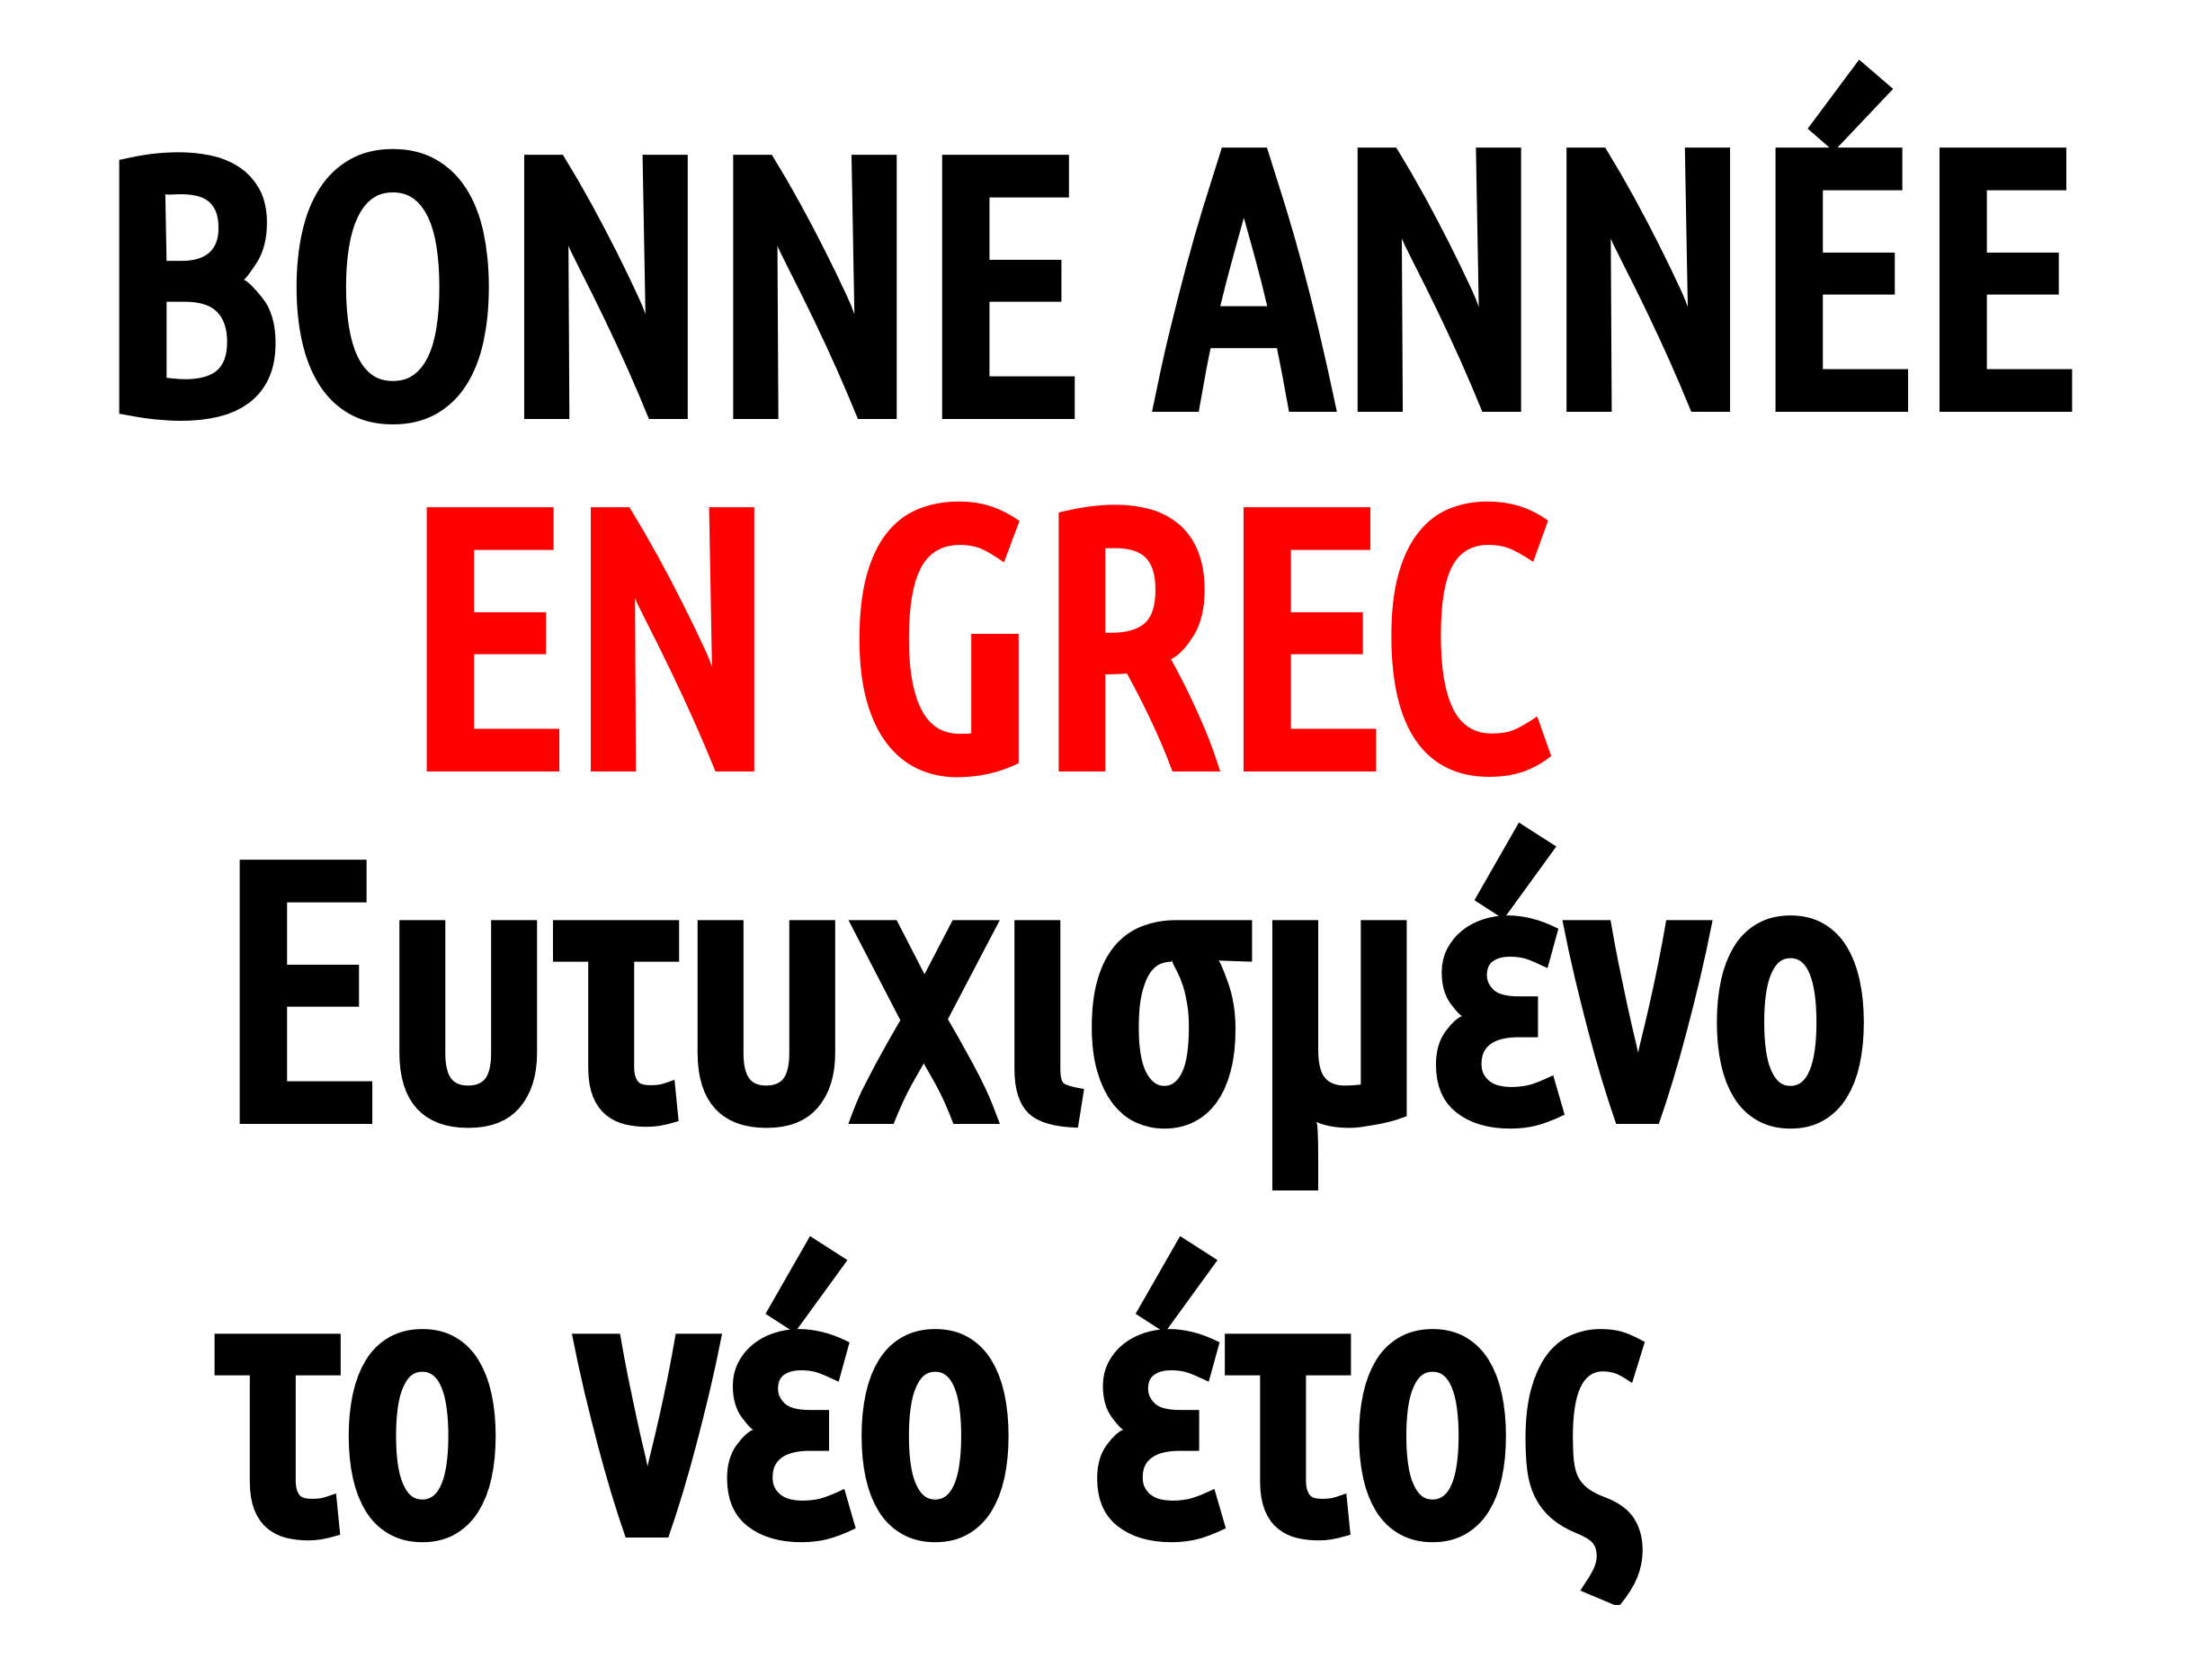 Comment dire "bonne année" en grec ?